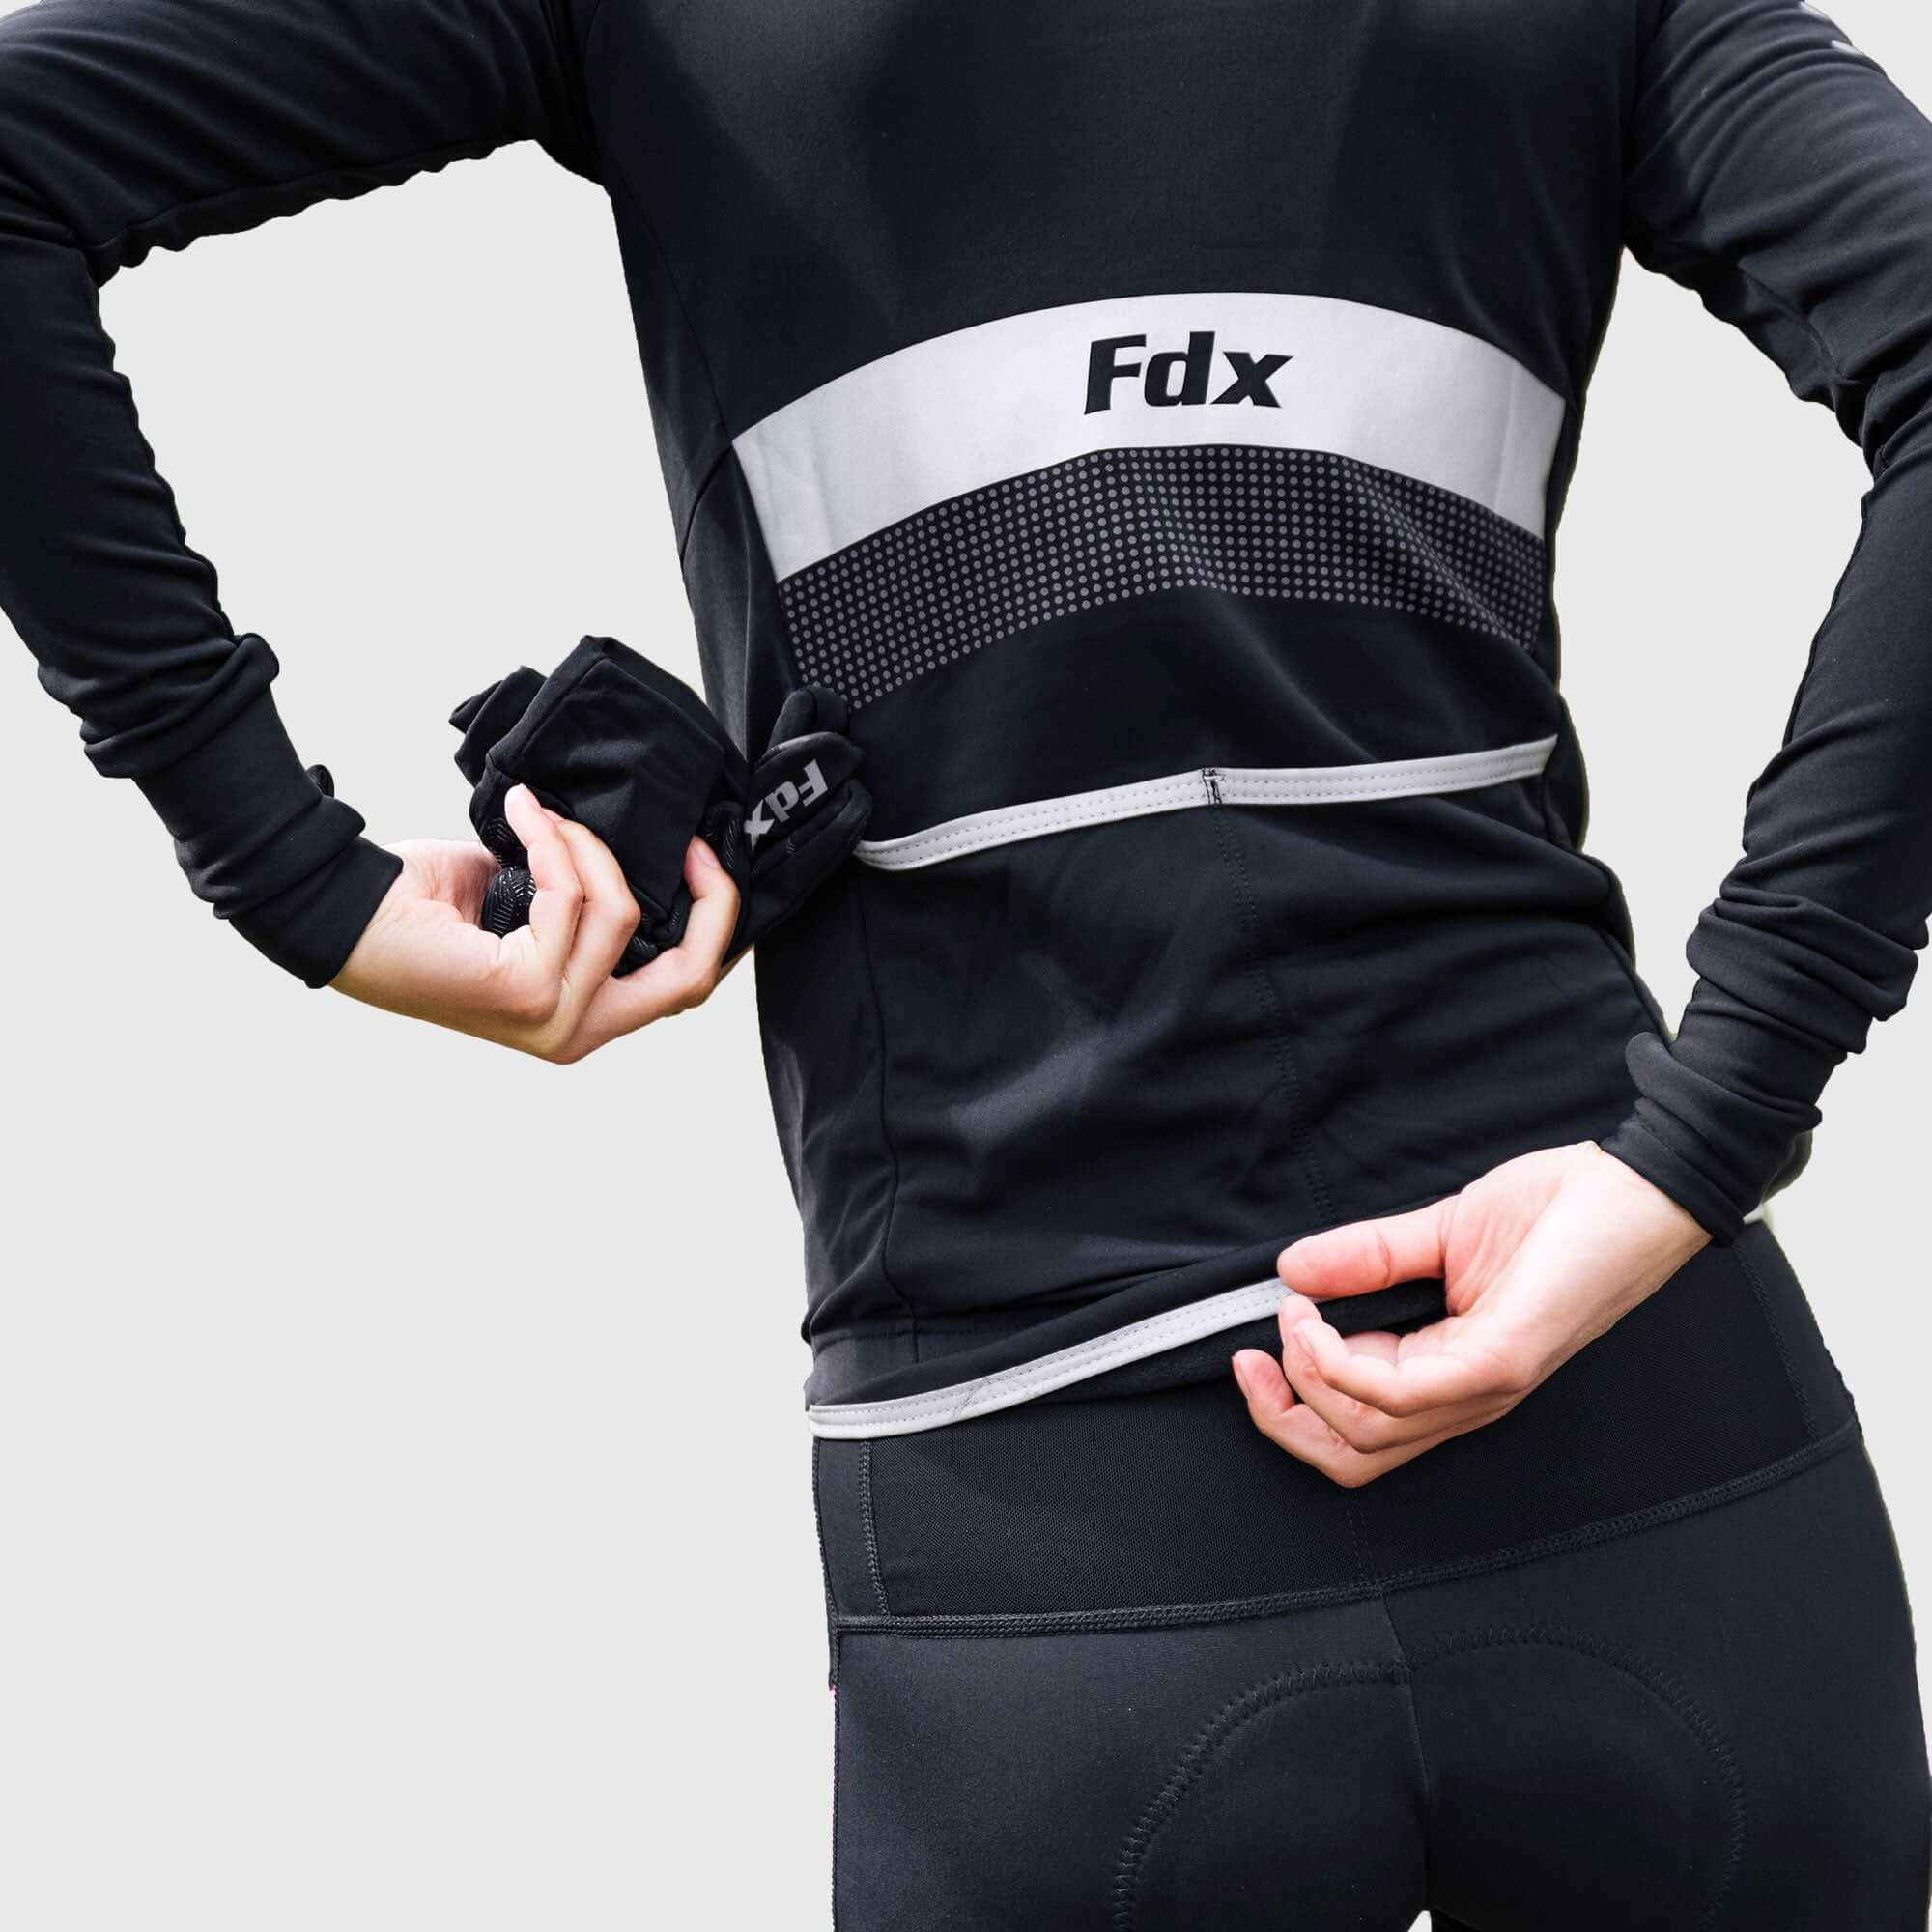 Fdx Warm Cycling Jersey for Men's Black & Blue for Winter Roubaix Thermal Fleece Road Bike Wear Top Full Zipper, Pockets & Hi viz Reflectors - Arch